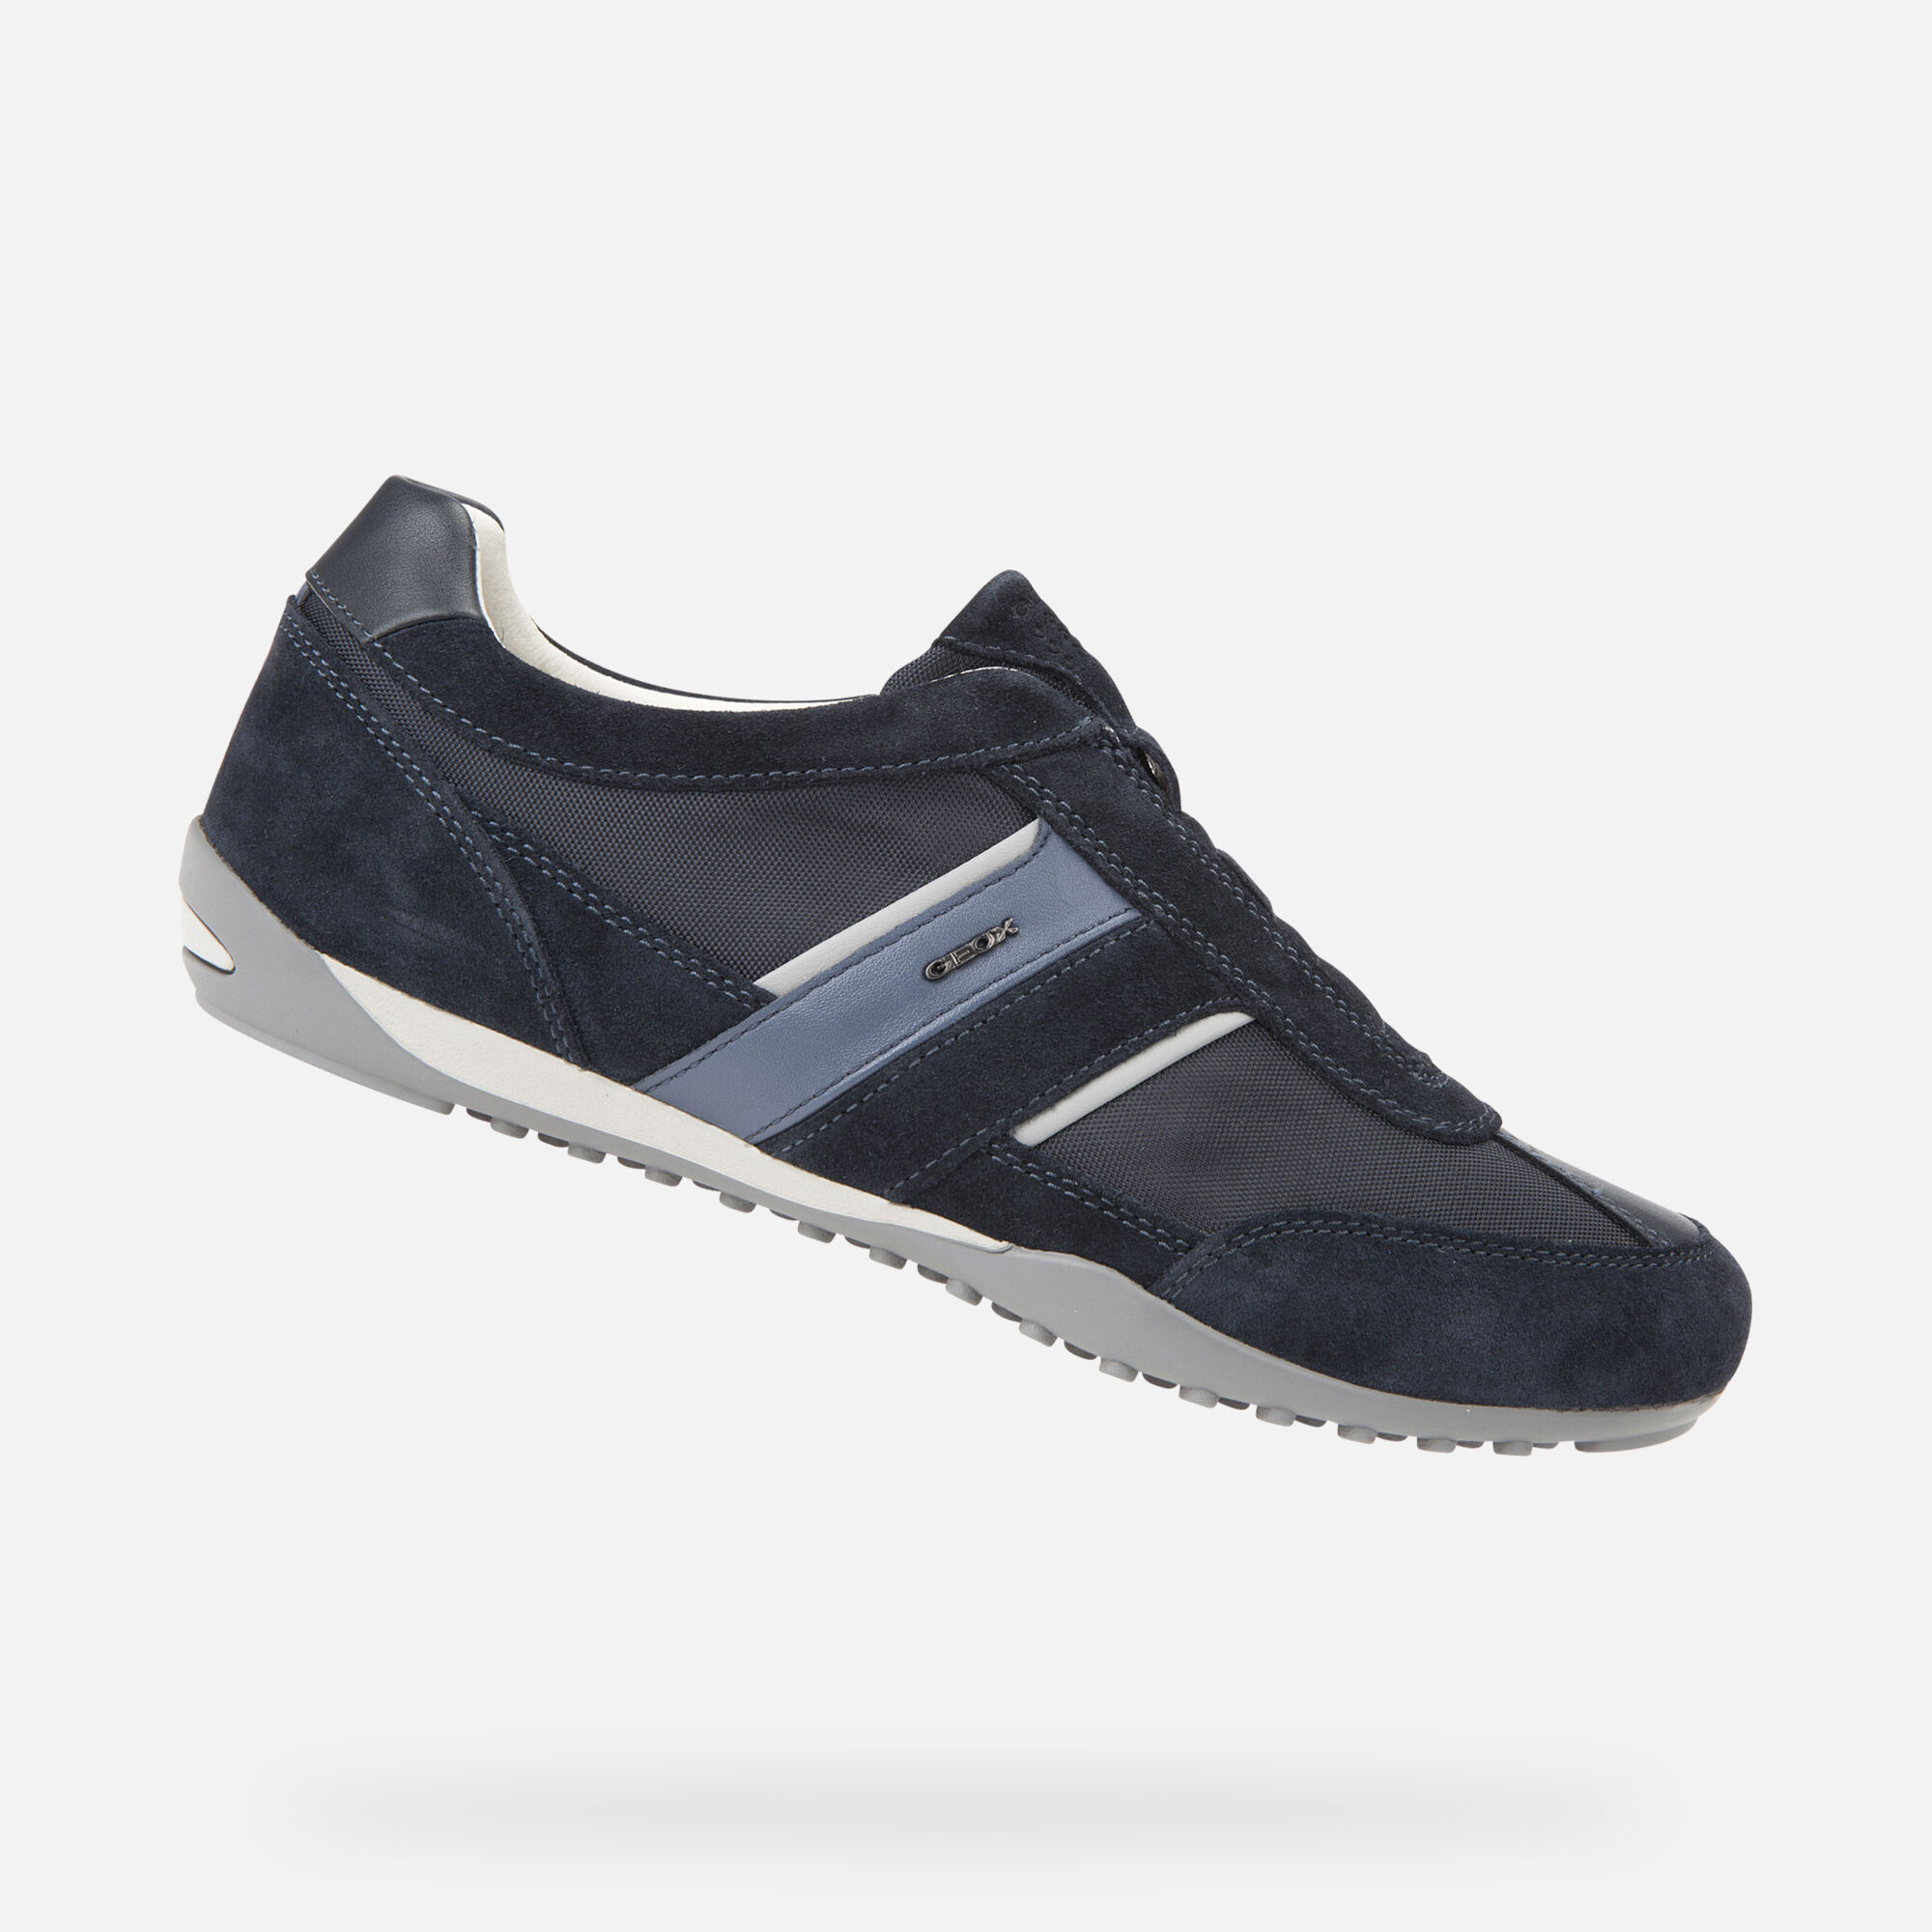 Geox Men's Wells Low Top Sneakers - Blue - Size 11Us / 44eu - Navy